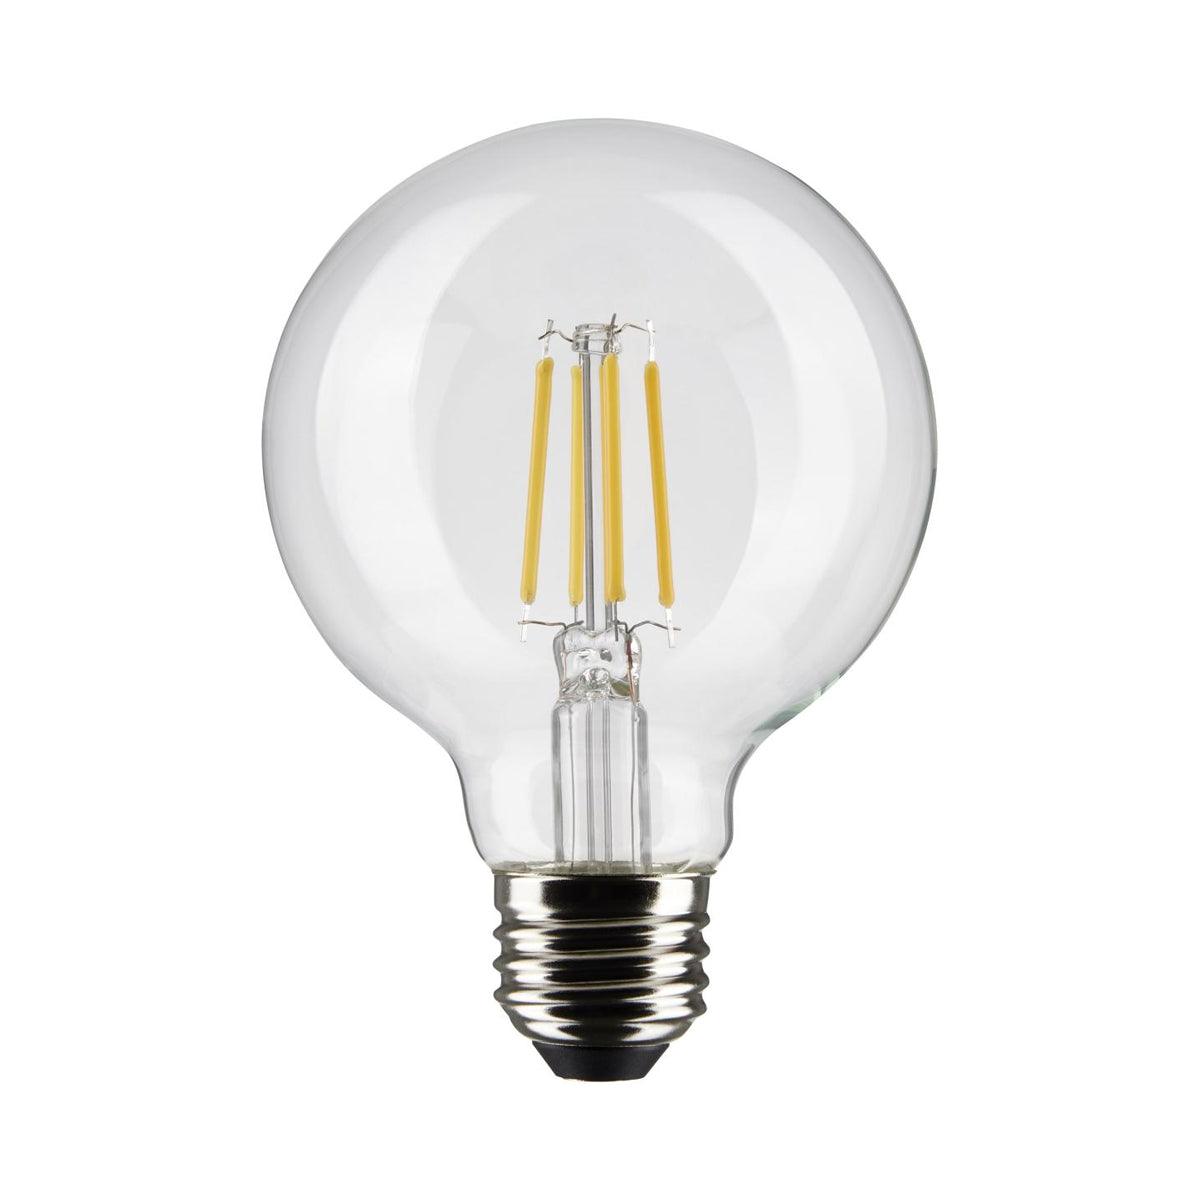 G25 LED Globe Bulb, 6 Watt, 500 Lumens, 3000K, E26 Medium Base, Clear Finish, Pack Of 2 - Bees Lighting